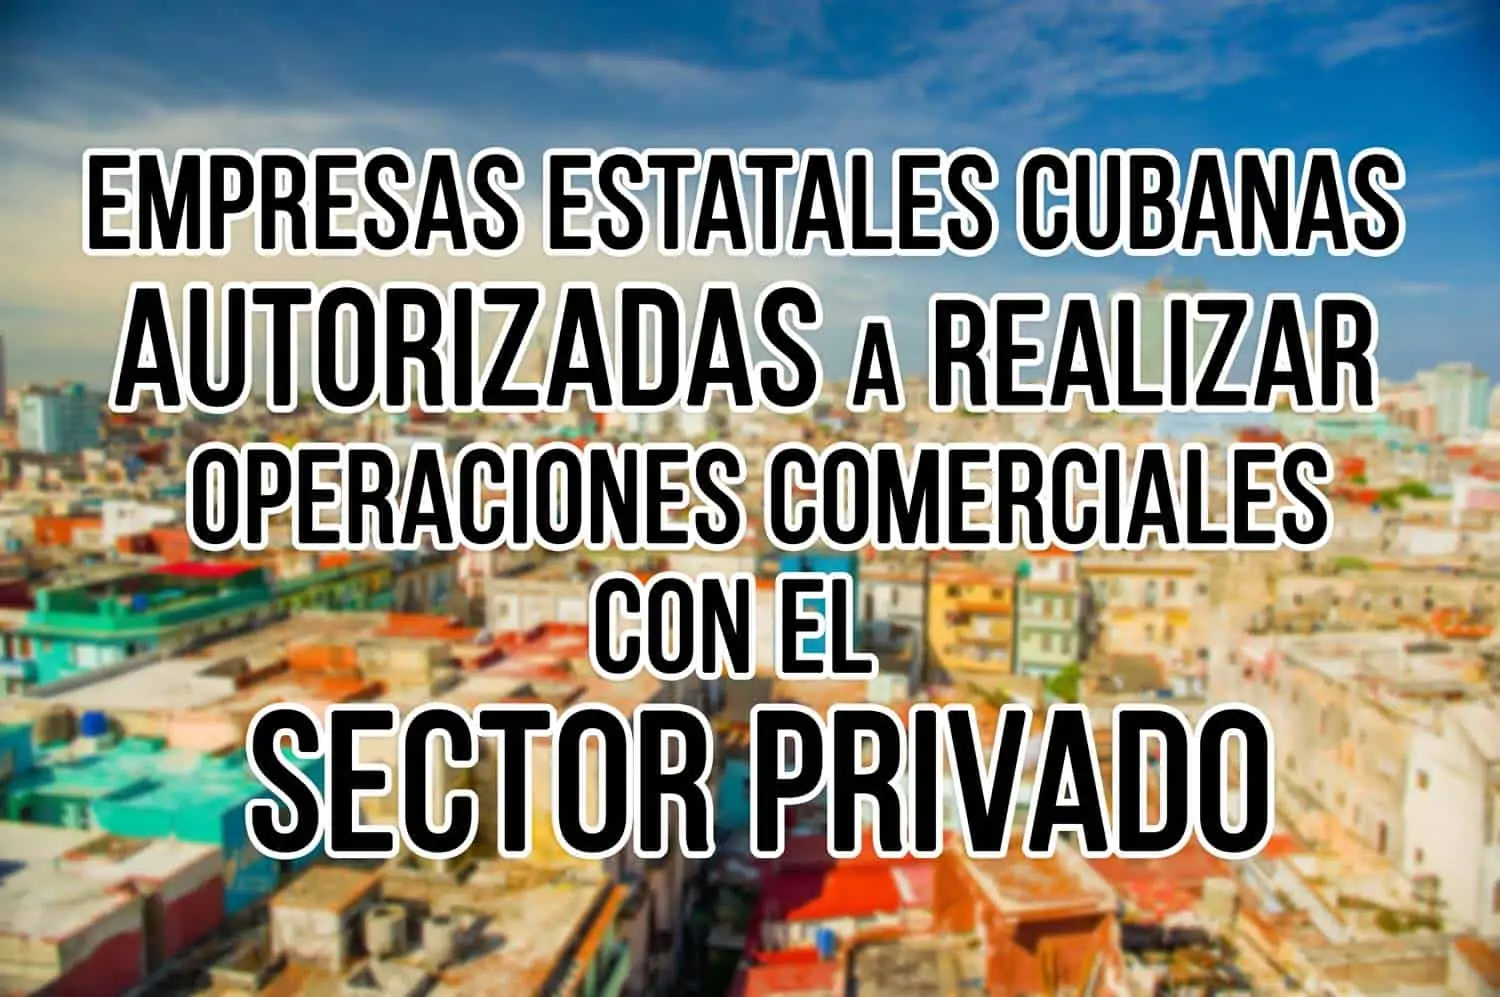 Empresas Estatales Cubanas Servicios de Comercio Exterior con el Sector Privado